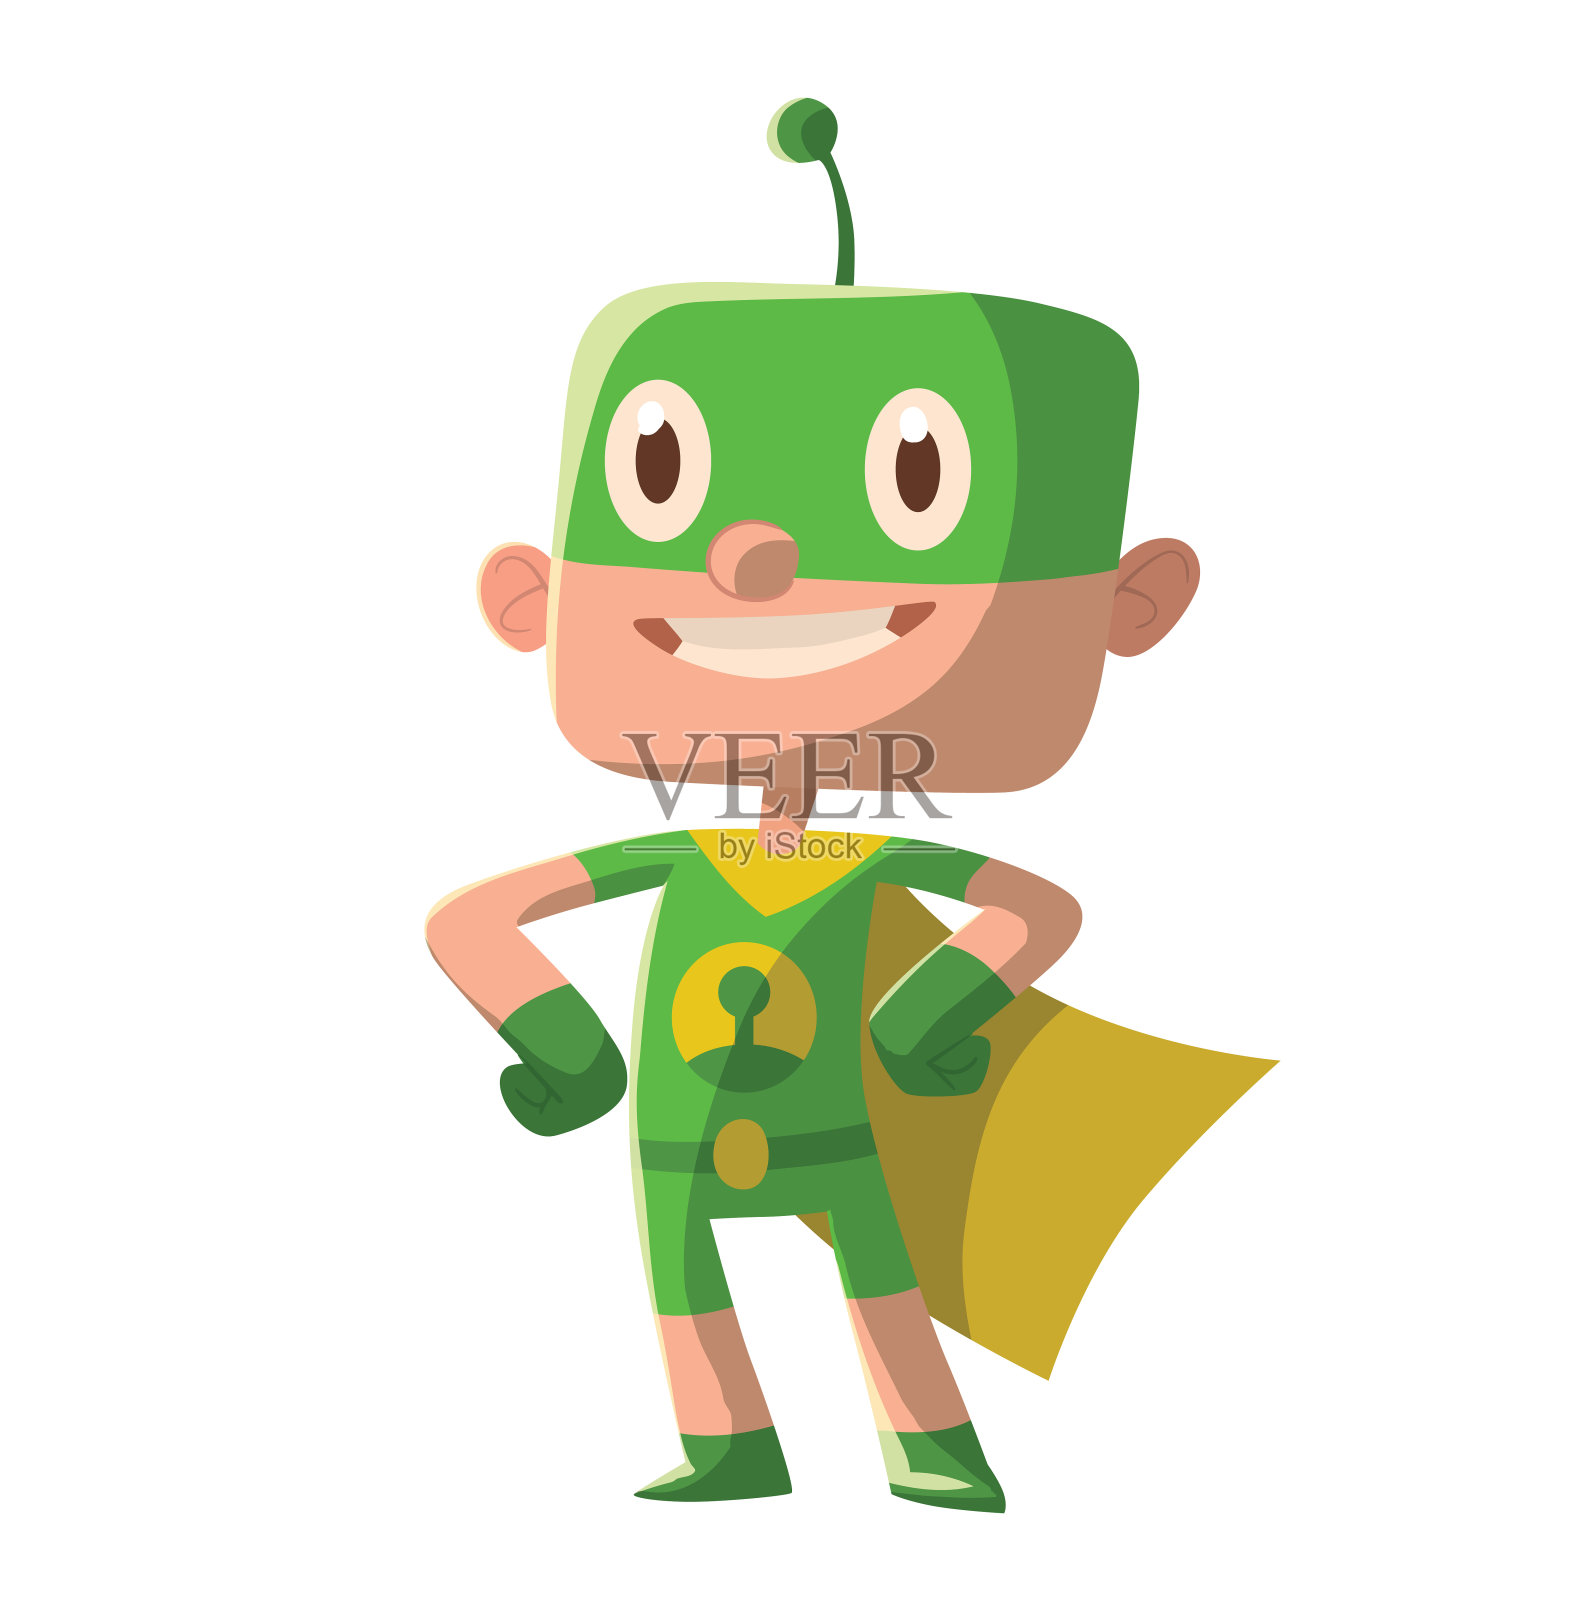 穿着绿色超级英雄服装的有趣小男孩插画图片素材